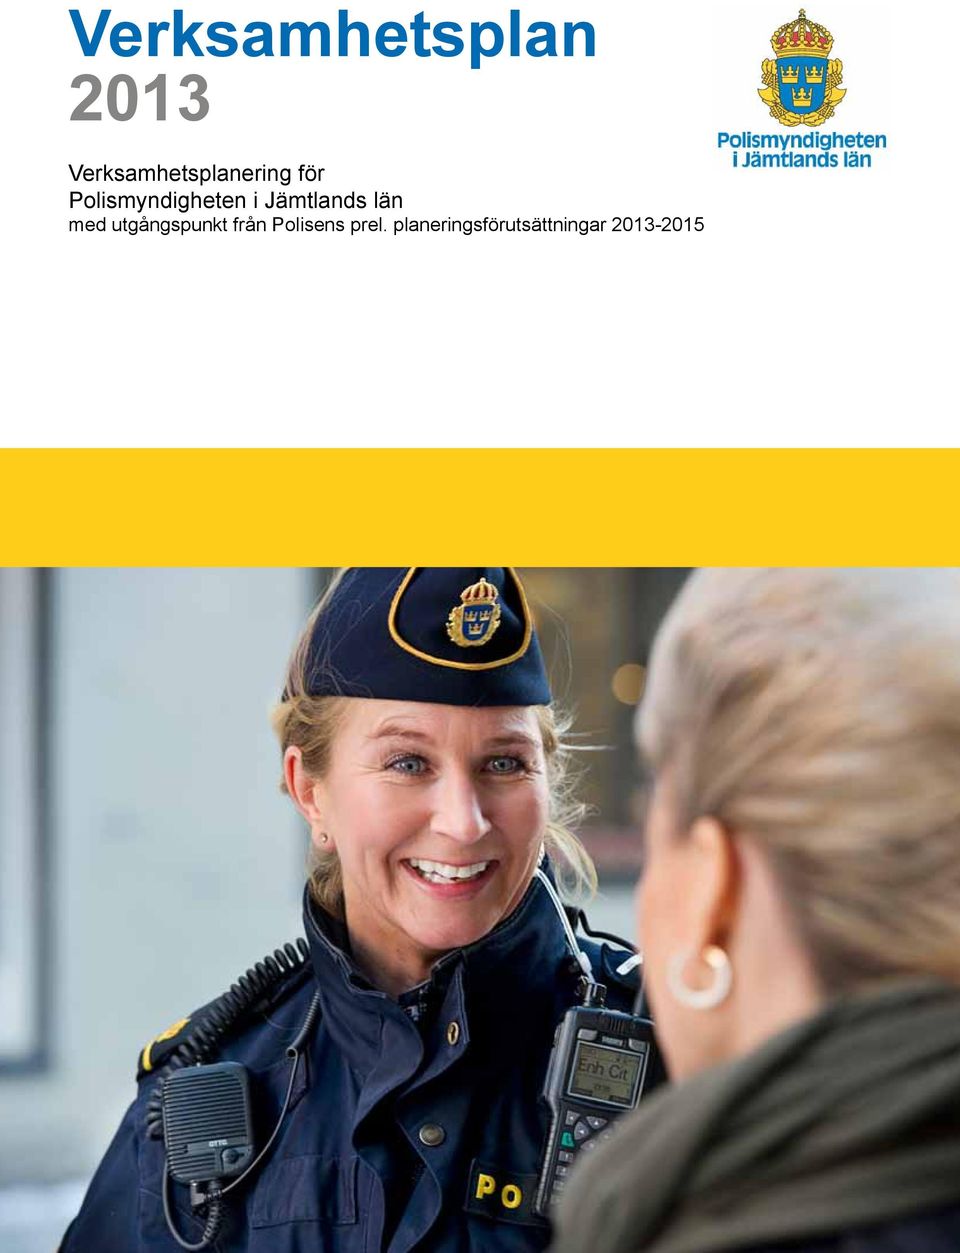 Polismyndigheten i Jämtlands län med